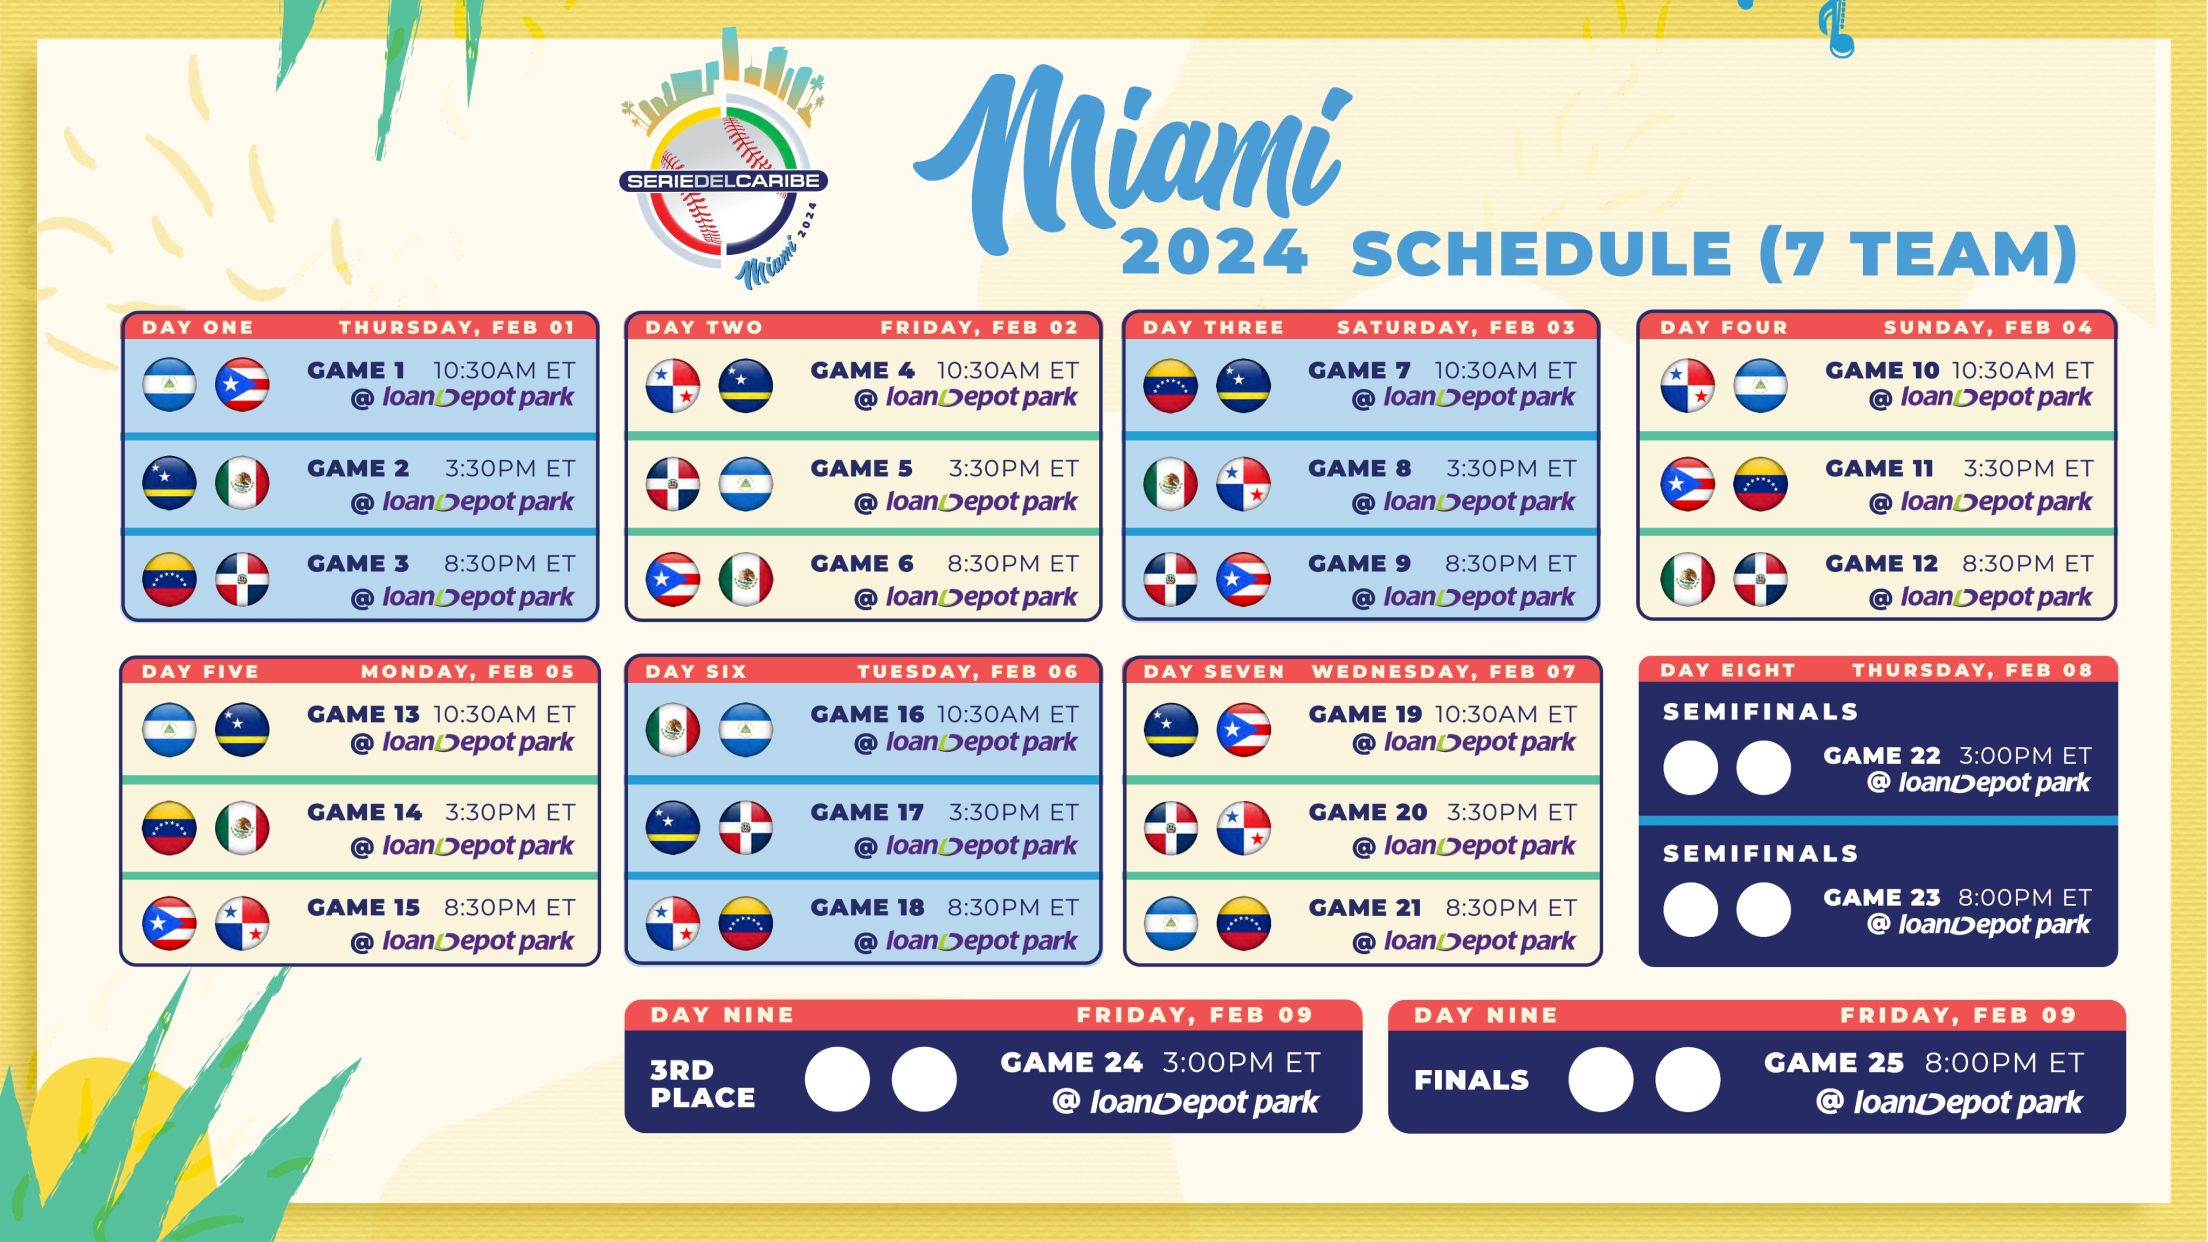 Serie del Caribe Miami 2024 Miami Marlins